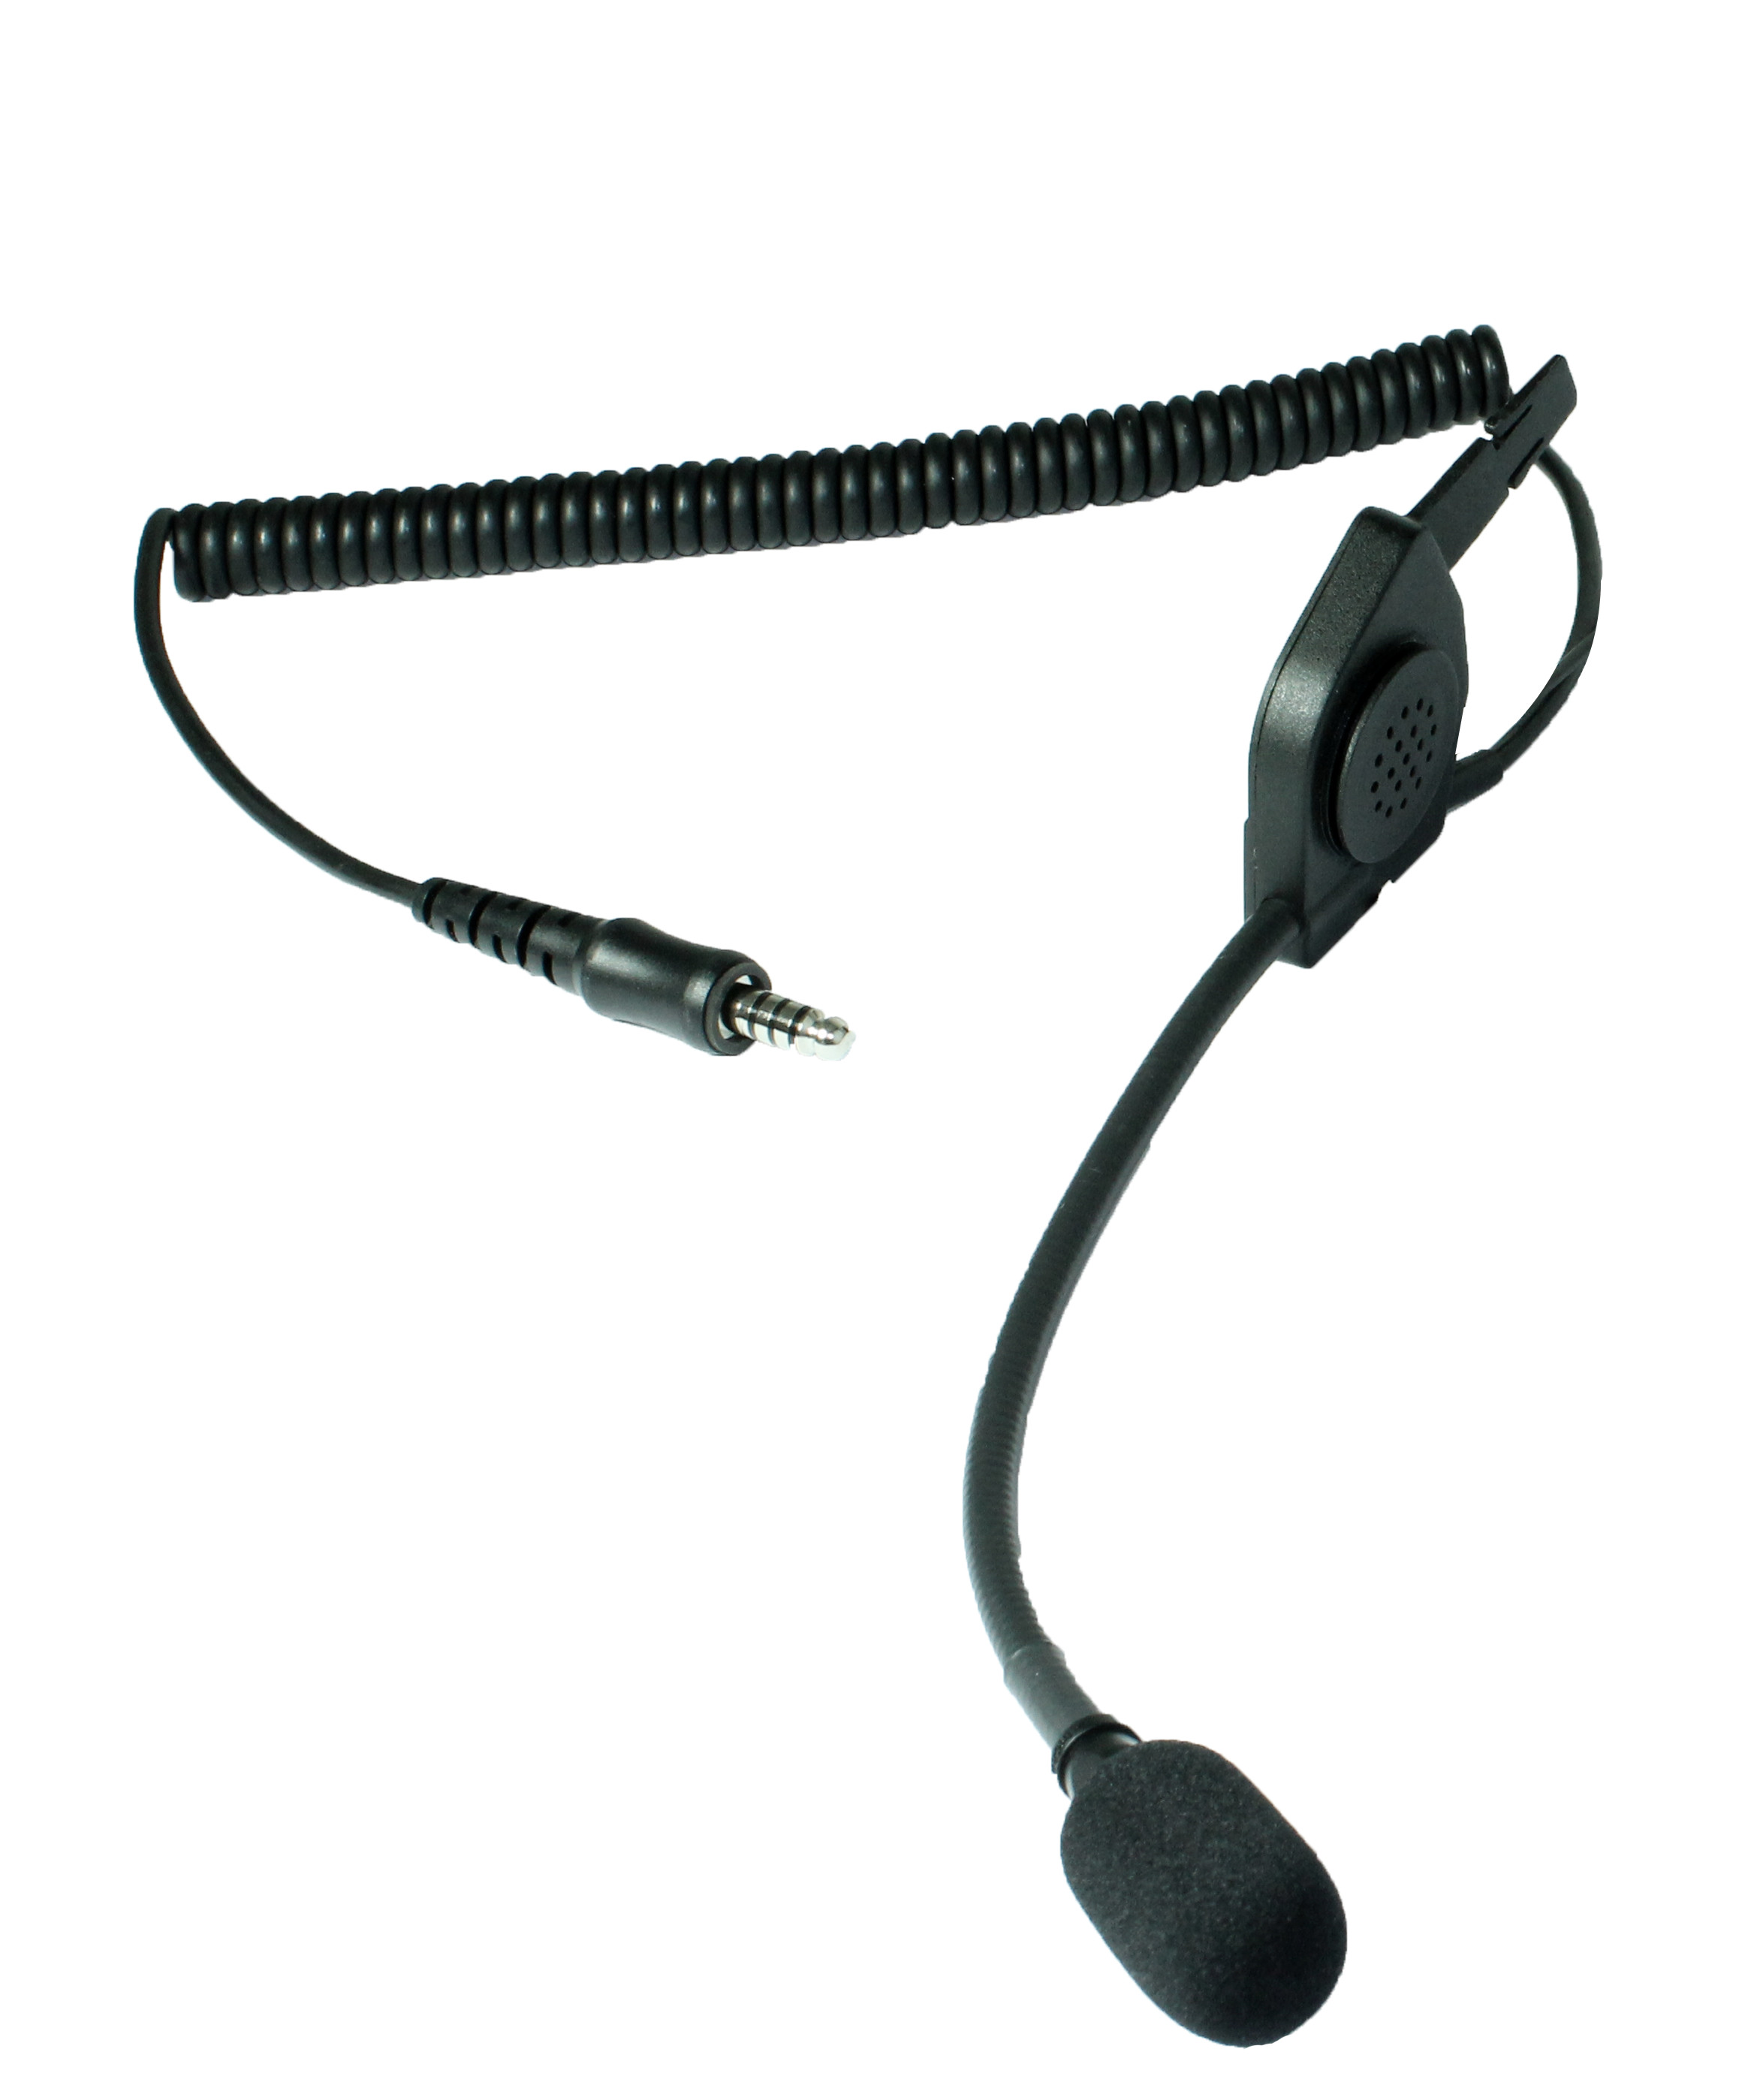 TITAN HUC5 Helmsprechgarnitur mit Mikrofon passend für MSA F1SF und F2 Helme -Nexus-